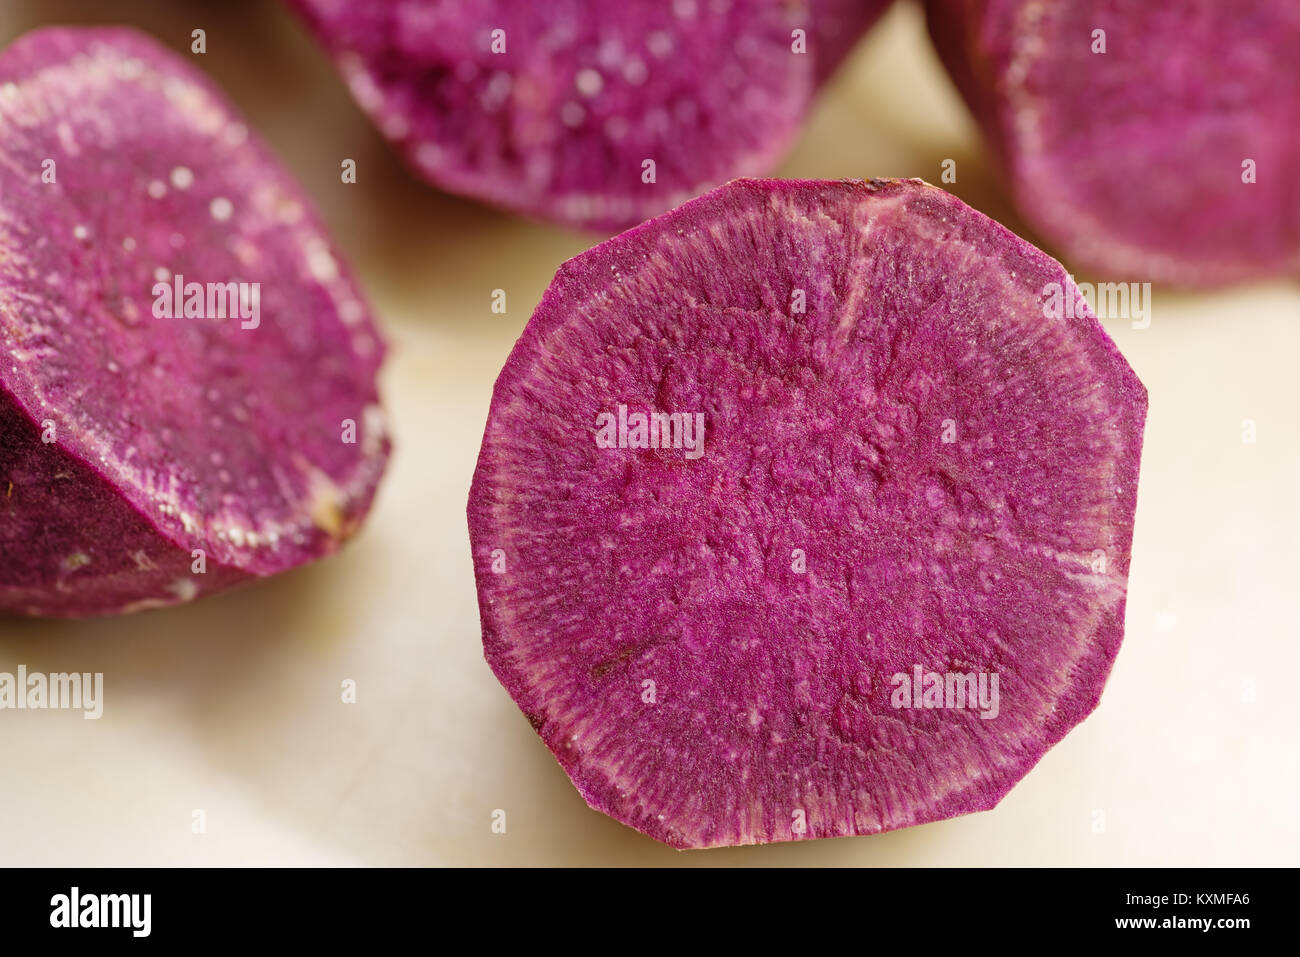 Coupé et taillé des morceaux de patate douce violette avec selective focus Banque D'Images